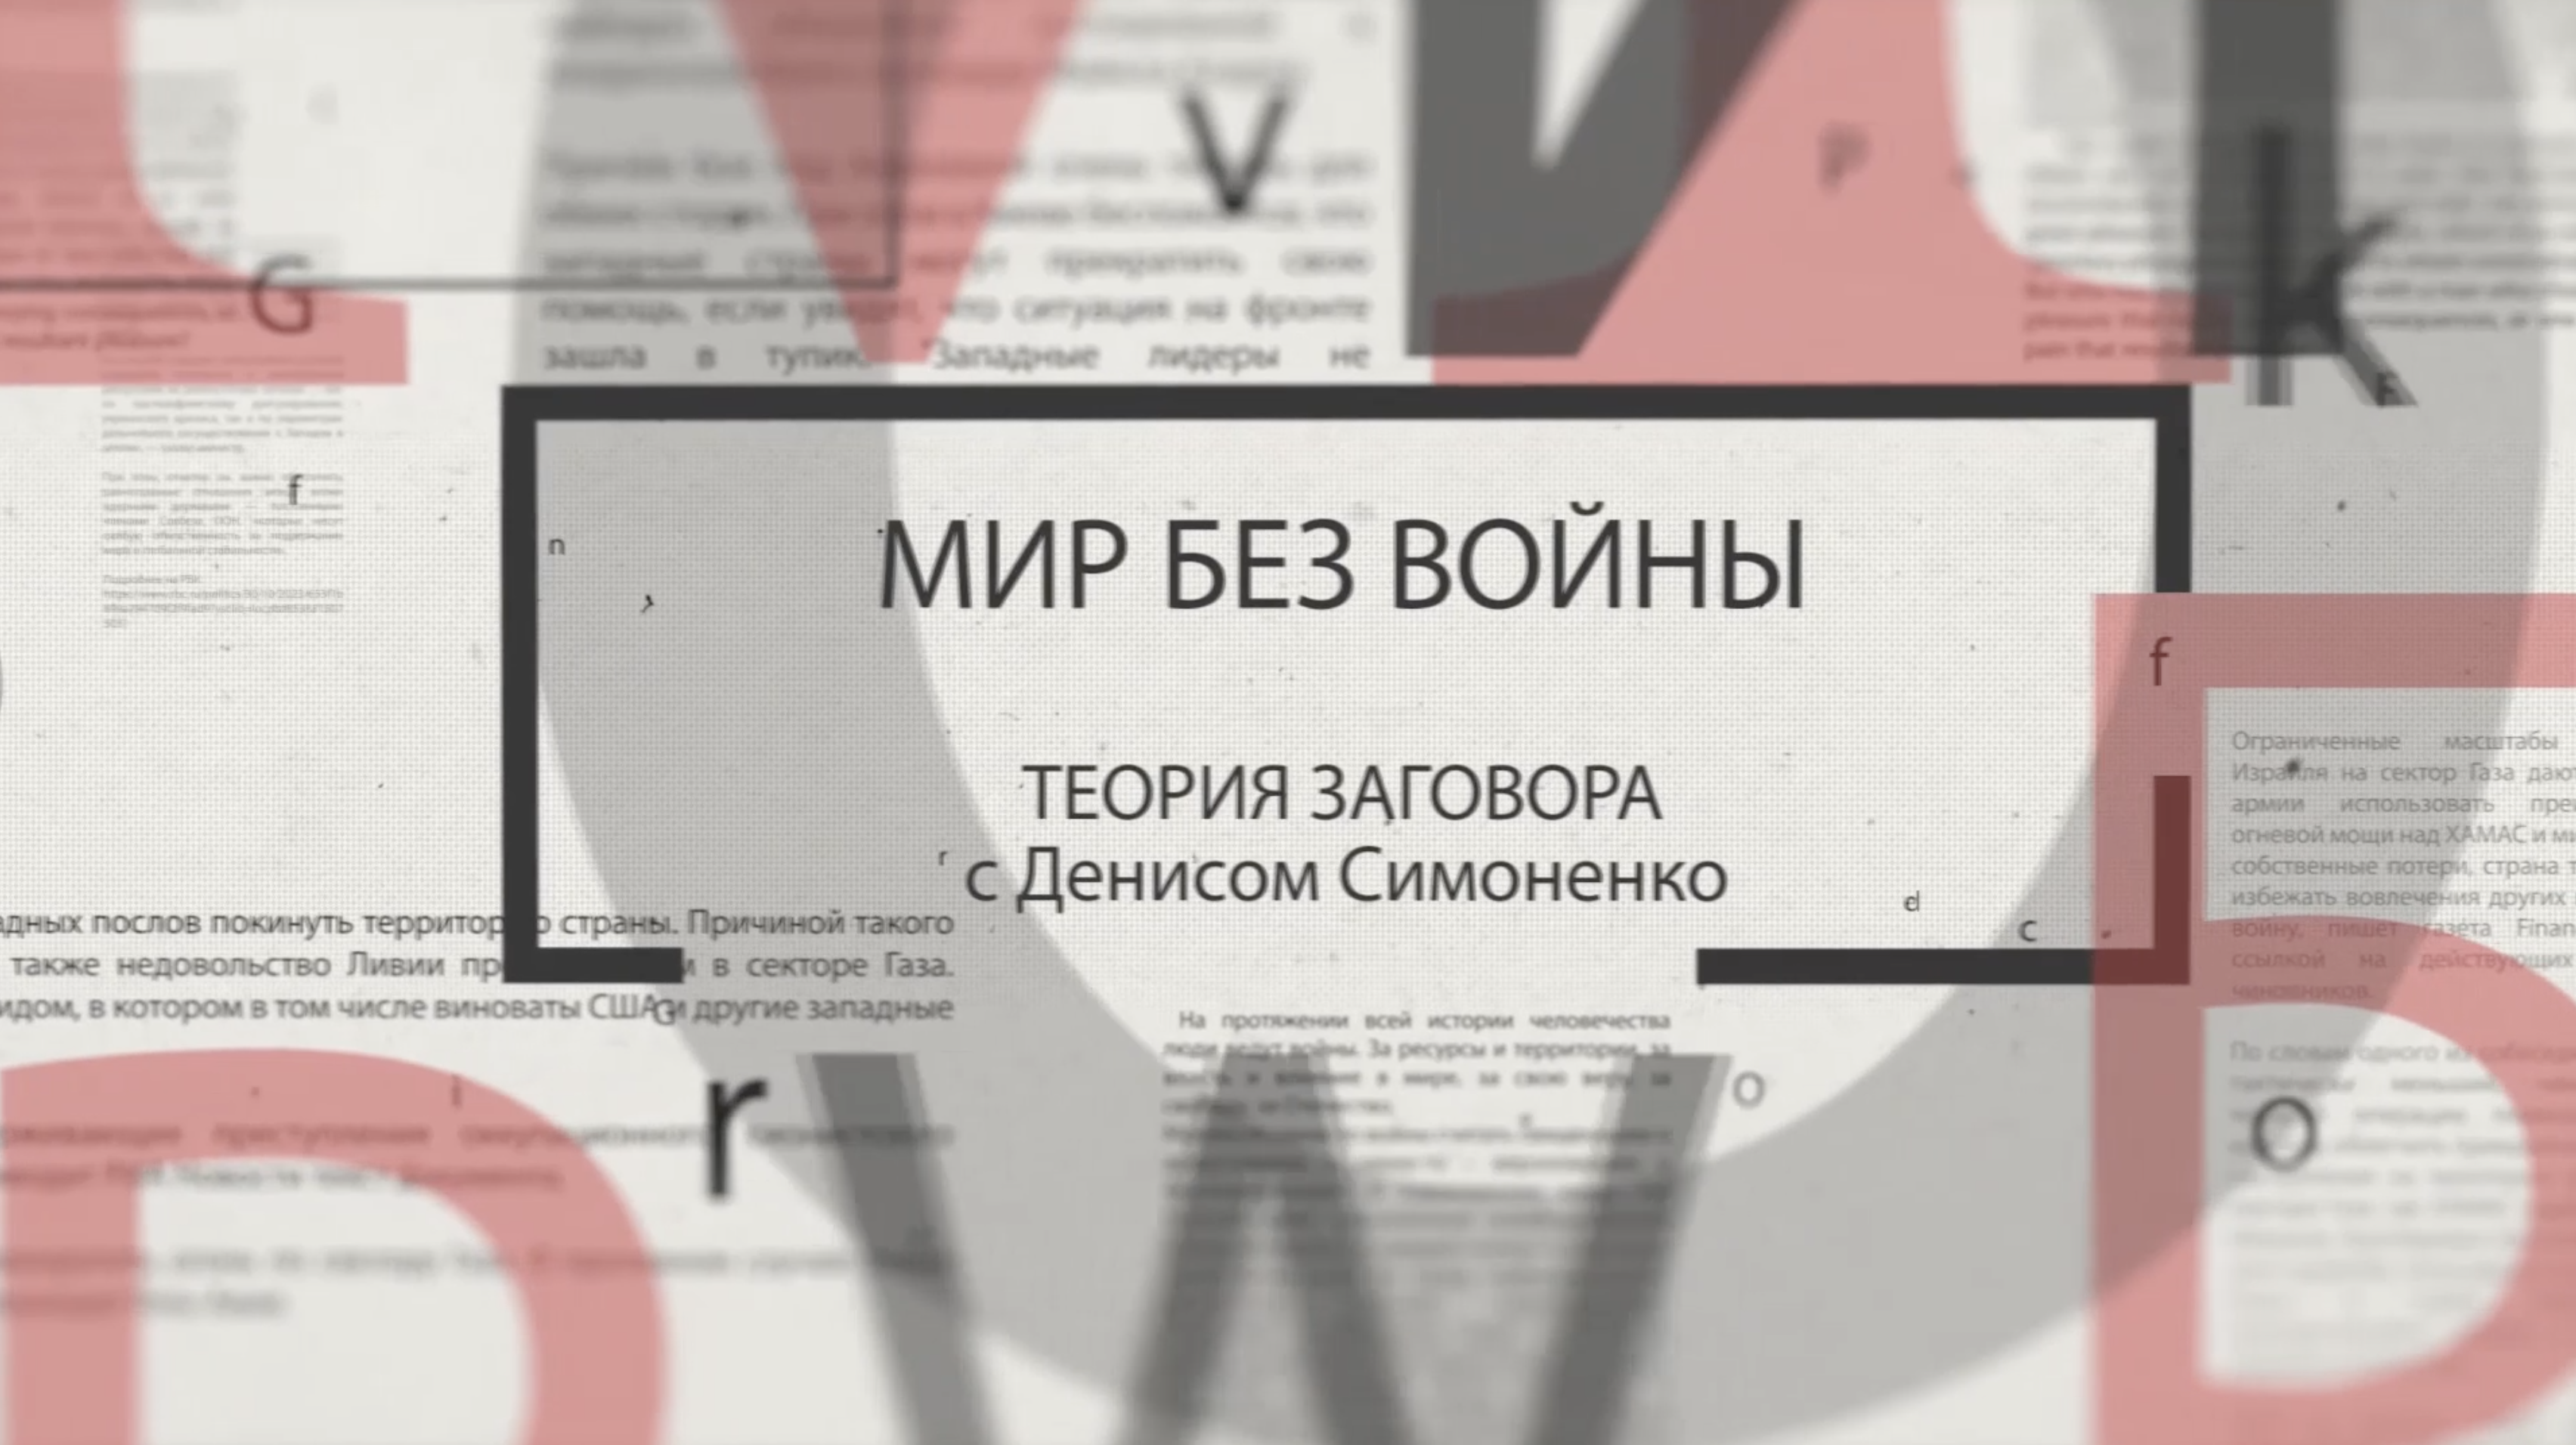 Теория заговора с Денисом Симоненко. Мир без войны